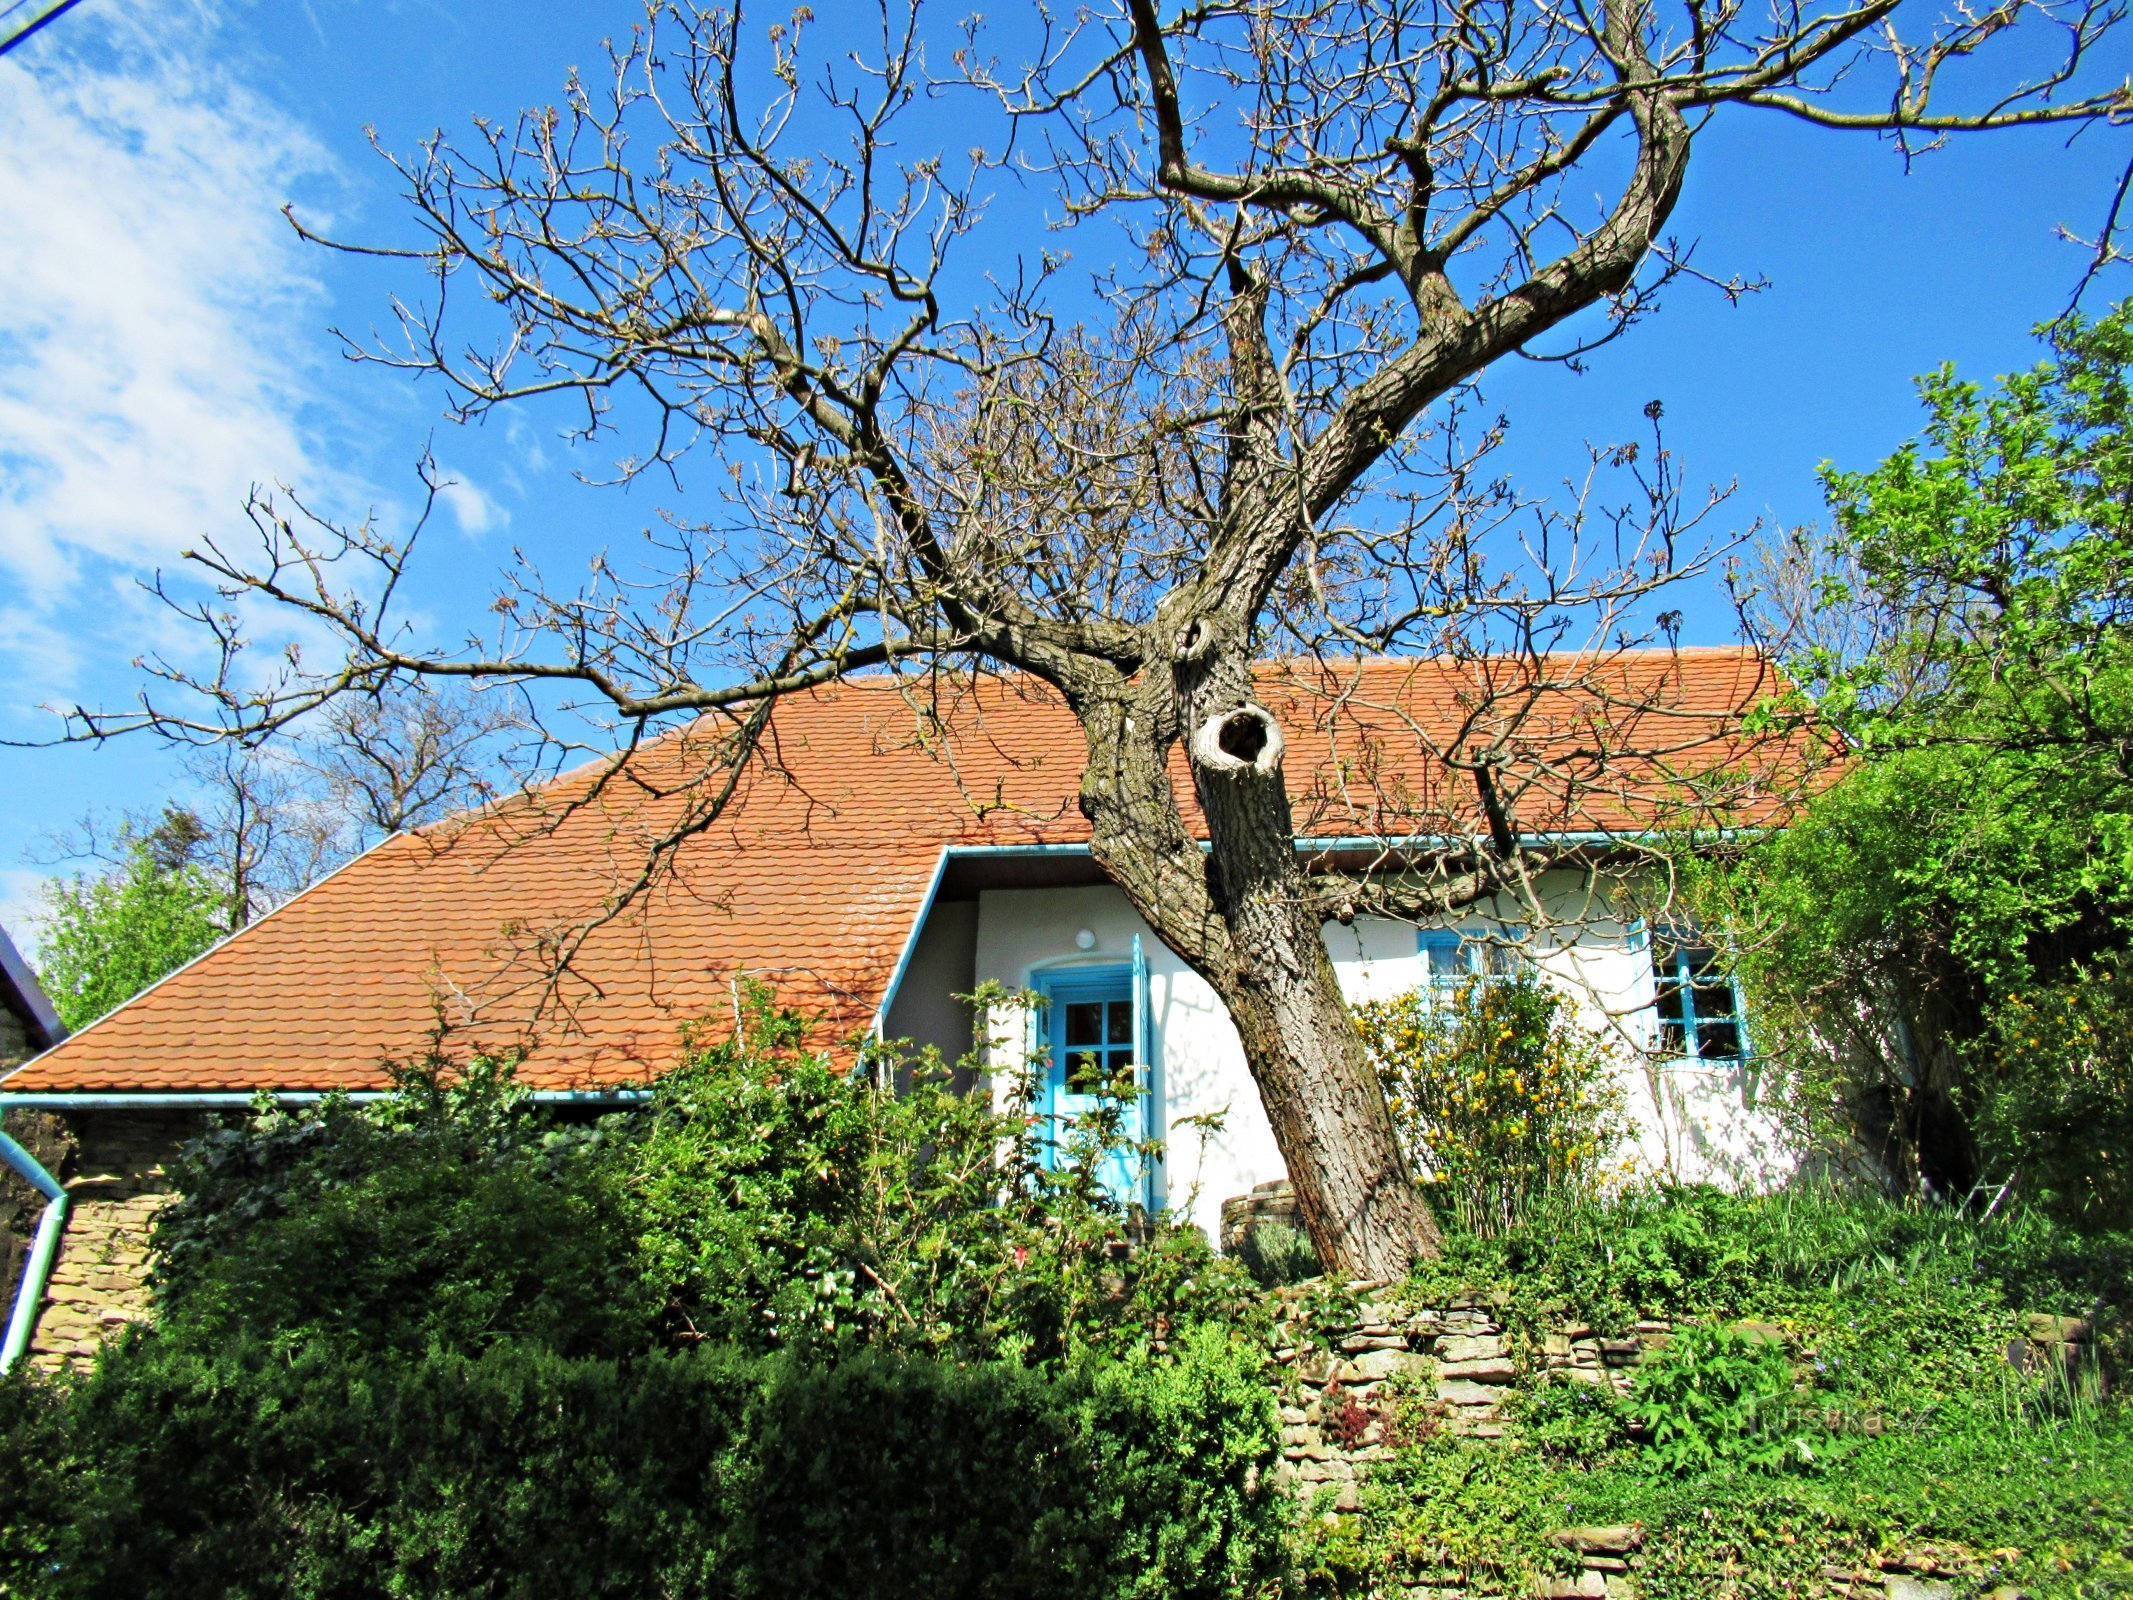 Le village de Javorník, maisons pittoresques de la région - Kopanky dans le village de Javorník à Slovácko